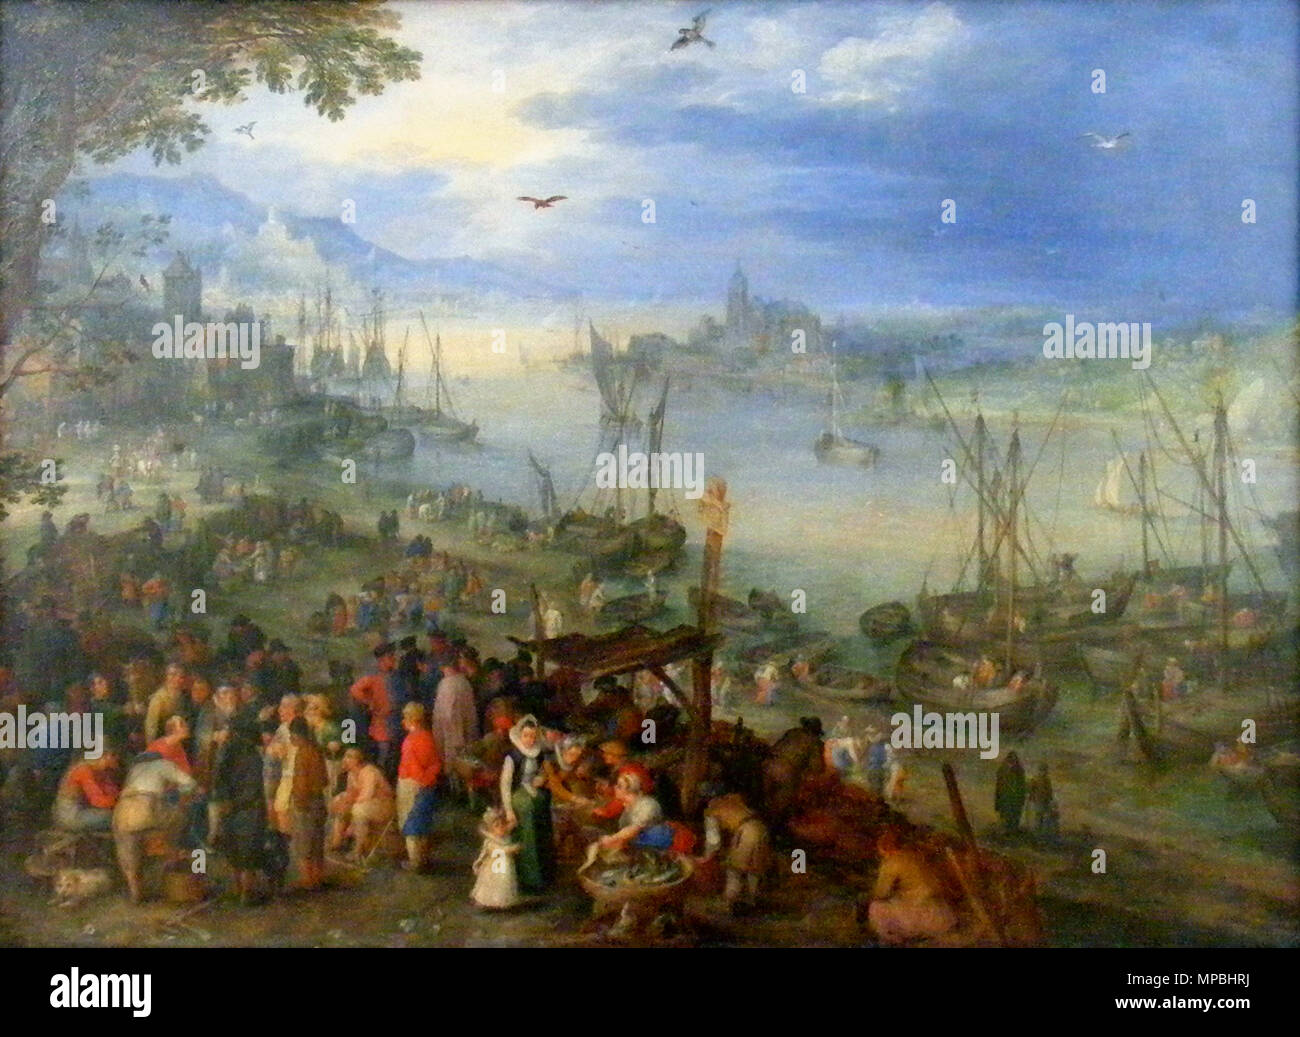 Q29871382. Deutsch : Fischmarkt Am Ufer eines Flusses . peint au 17e siècle. 696 Jan Brueghel l'ancien - Fischmarkt Am Ufer eines Flusses-2 Banque D'Images